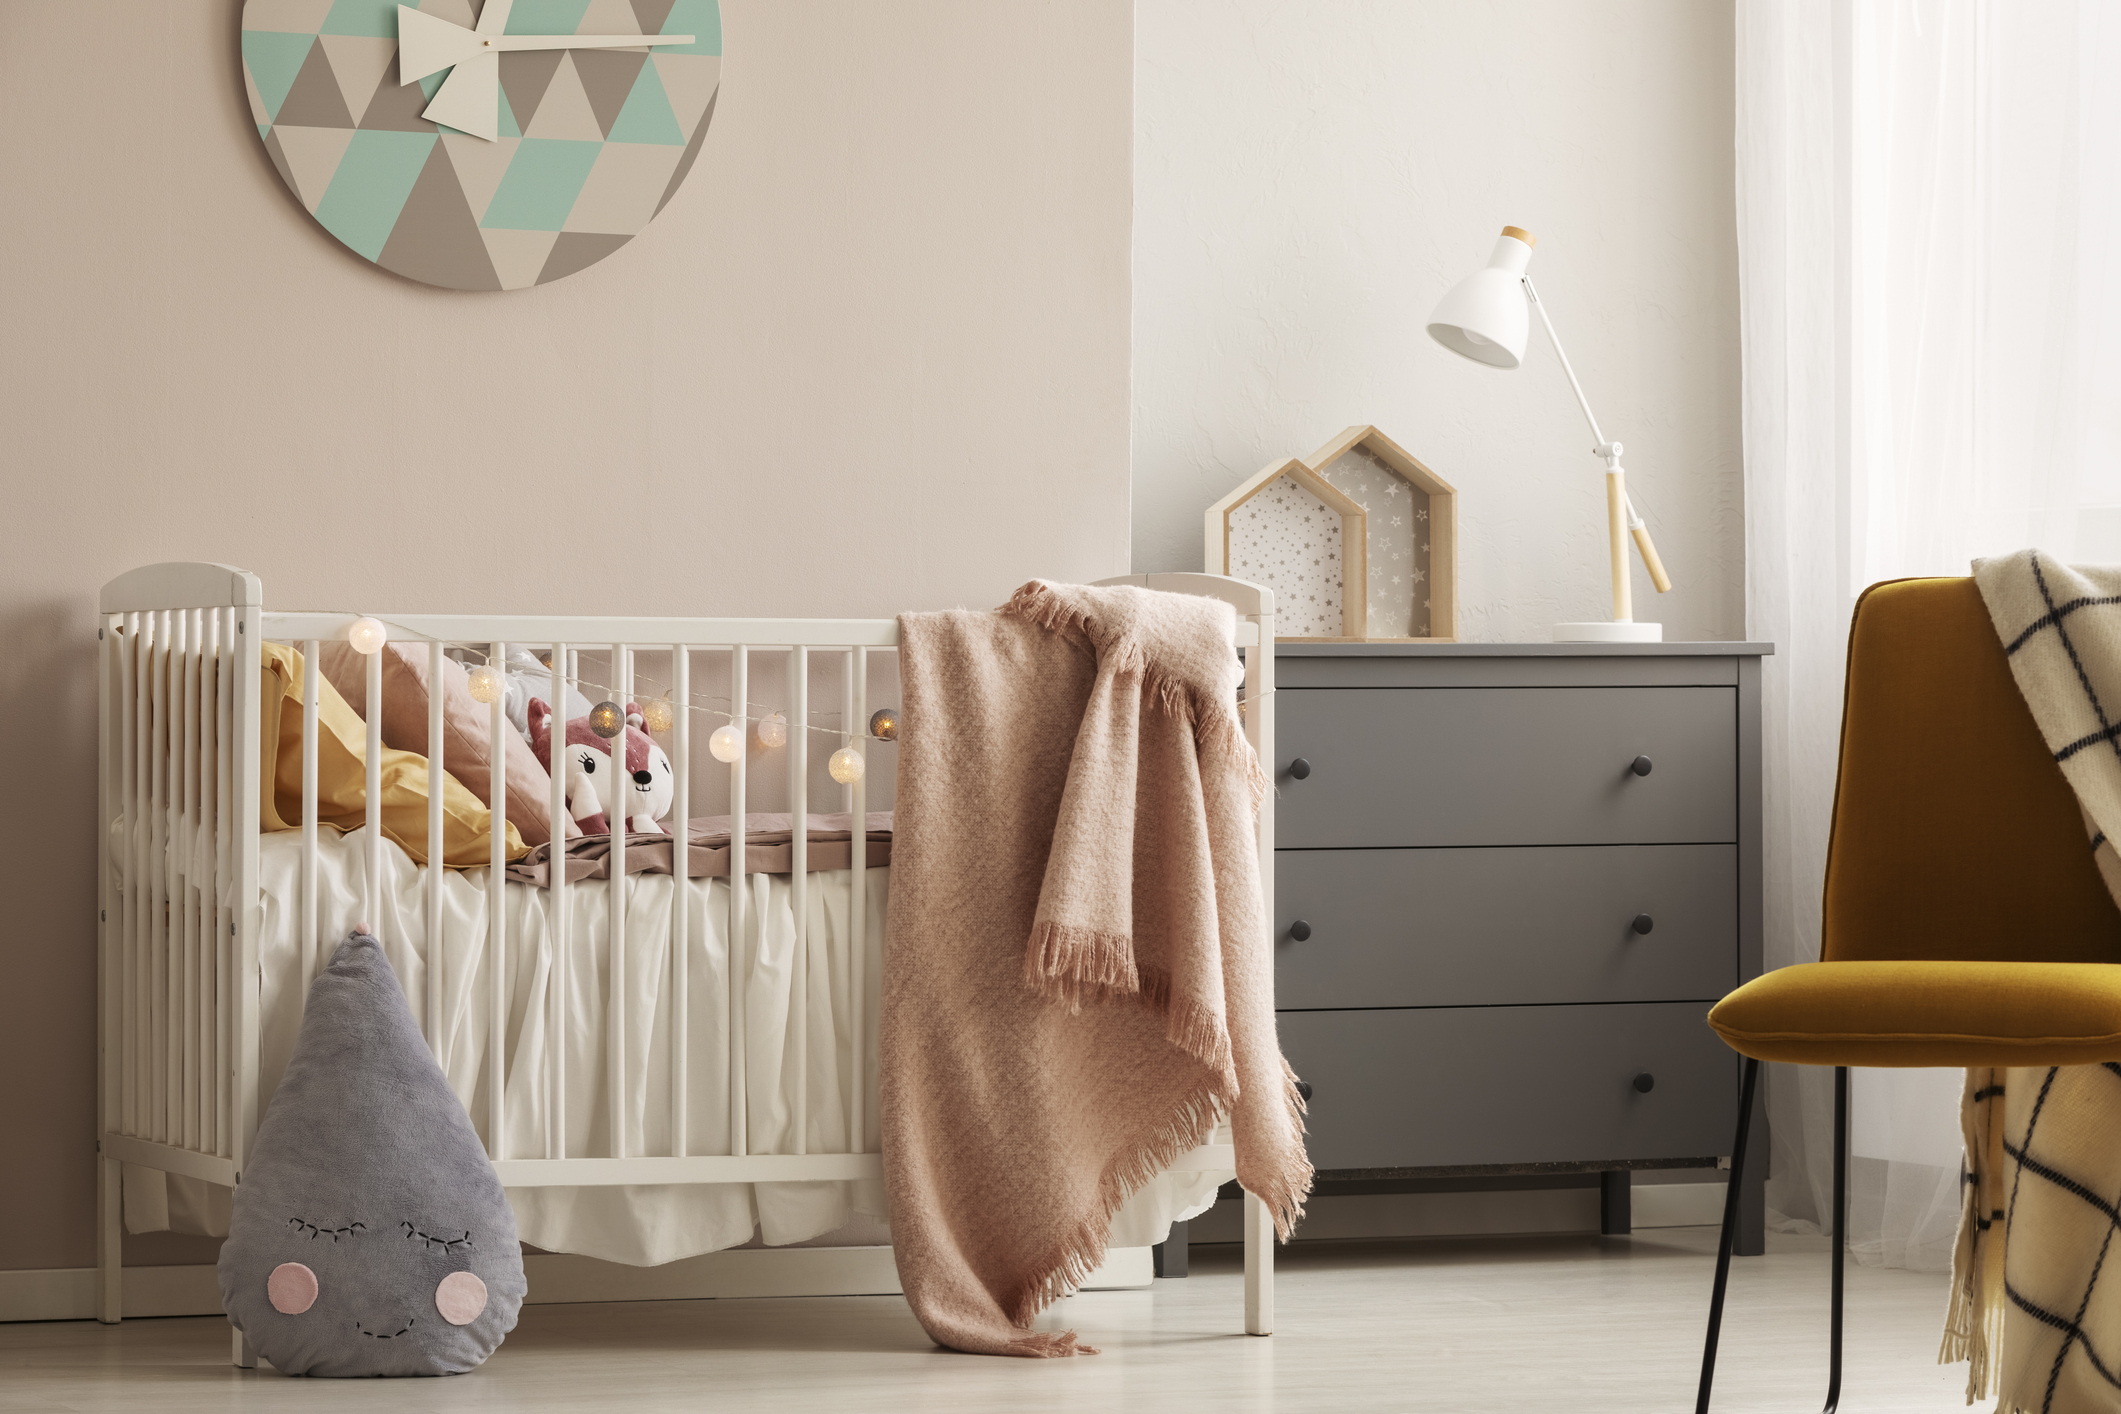 idealna soba za bebe